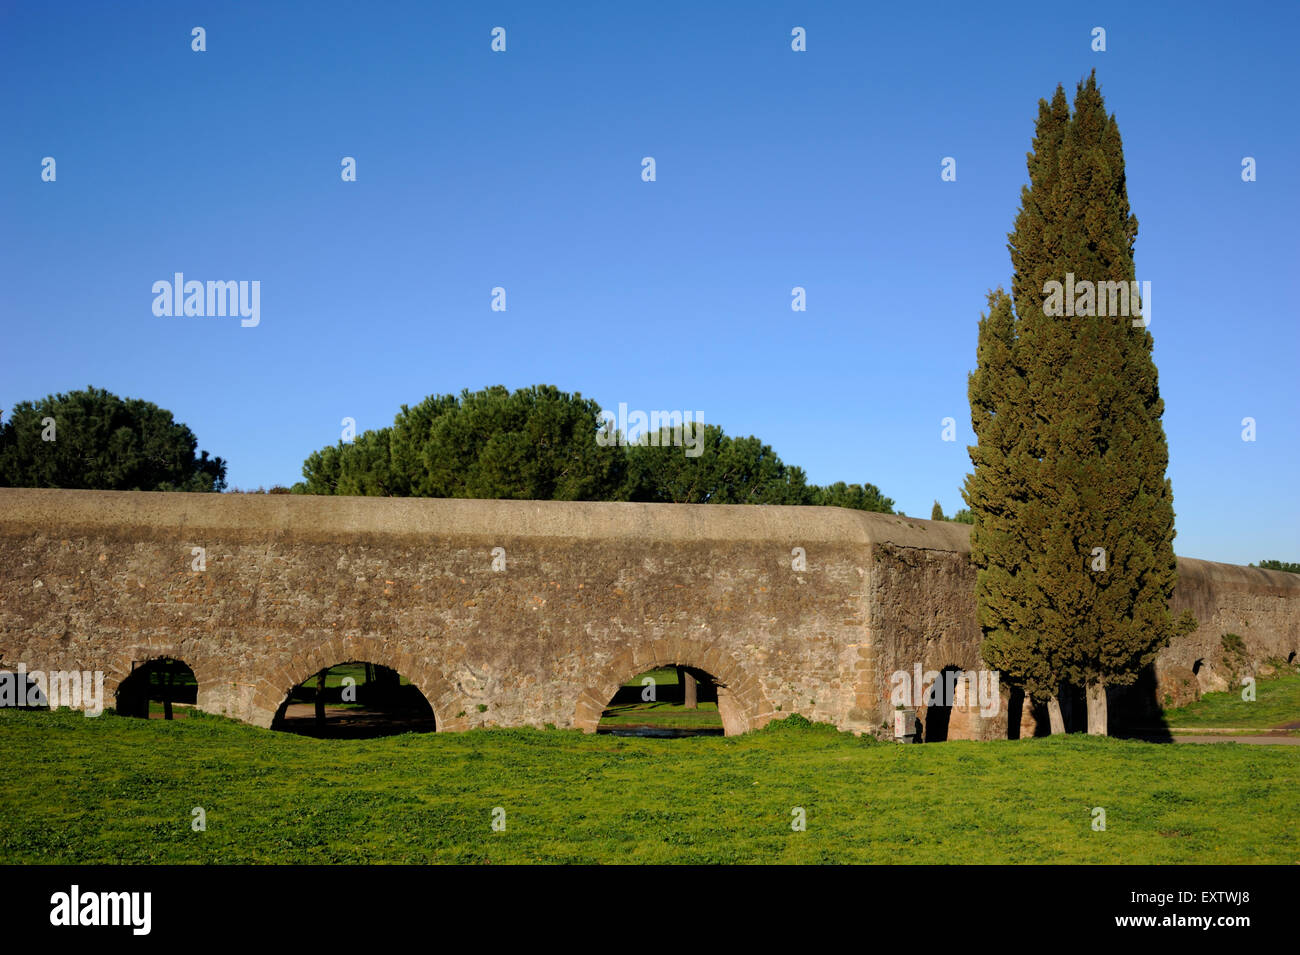 Italie, Rome, Parco degli Acquedotti (parc des aqueducs), acquedotto dell'Acqua Marcia, ancien aqueduc romain Banque D'Images